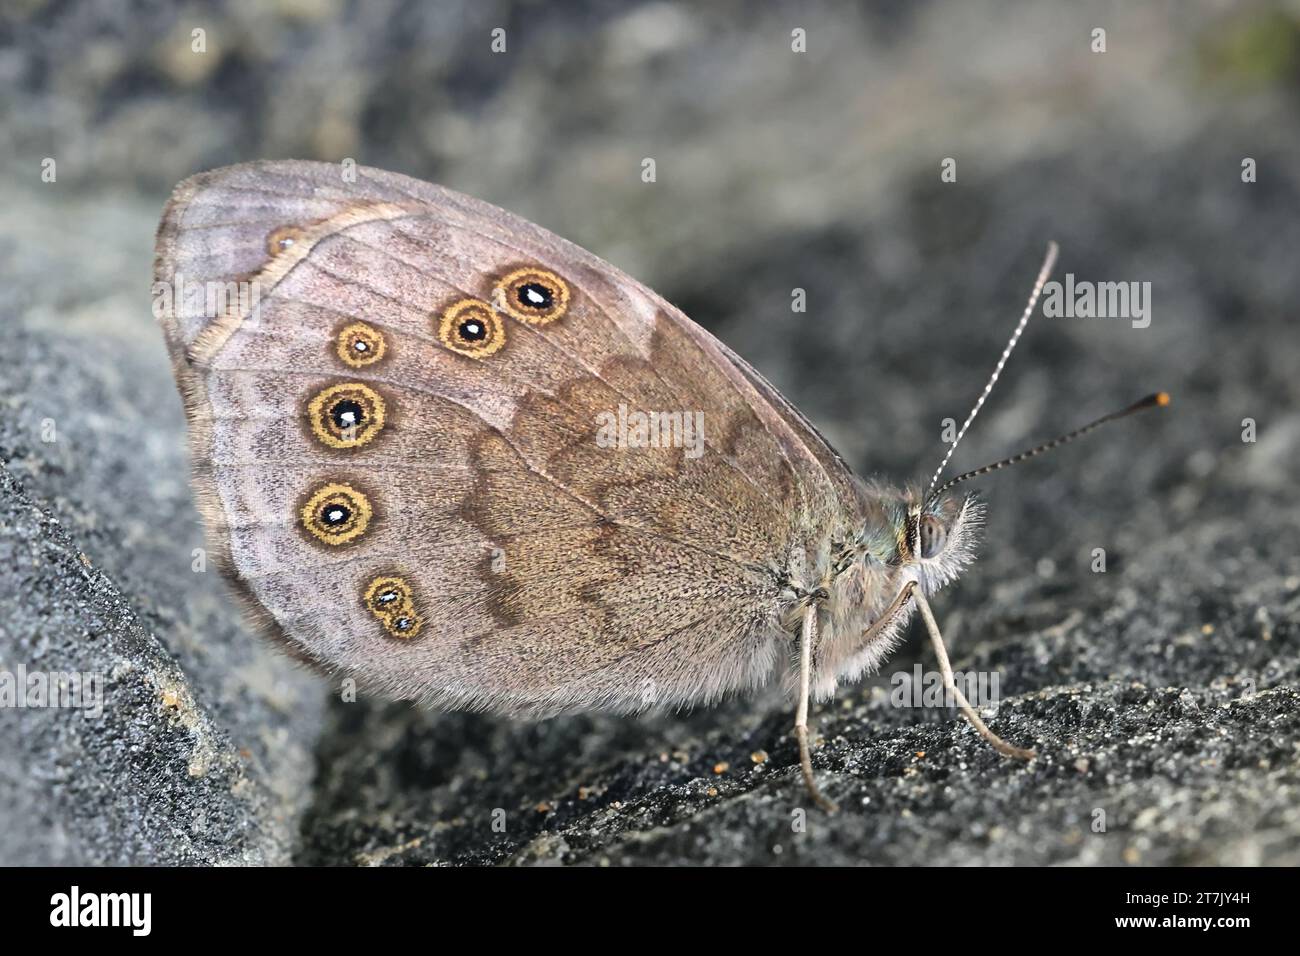 Lasiommata maera, auch Pararge maera genannt, allgemein bekannt als der große braune Schmetterling aus Finnland Stockfoto